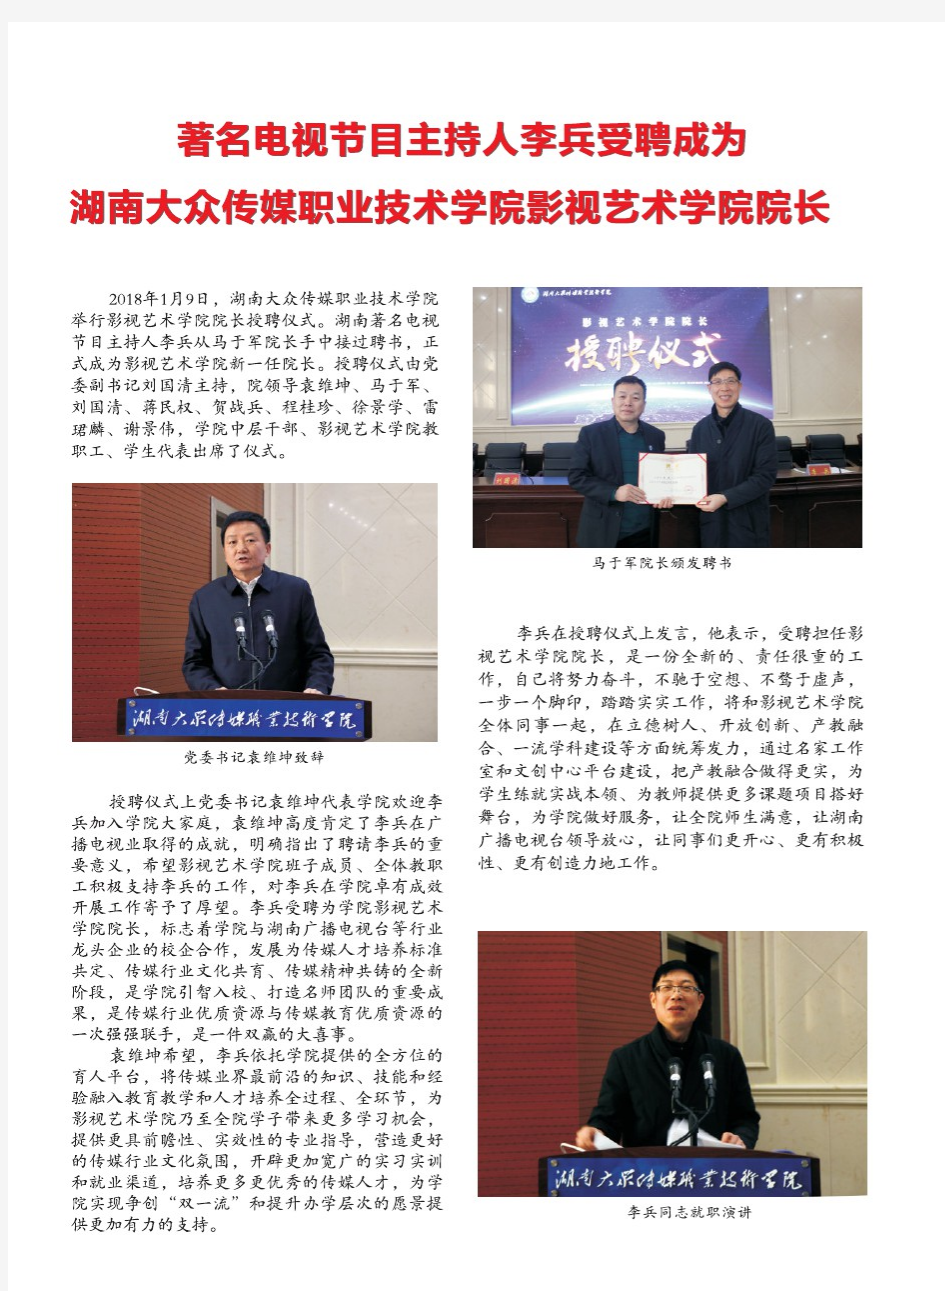 著名电视节目主持人李兵爱聘成为湖南大众传媒职业技术学院影视艺术学院院长